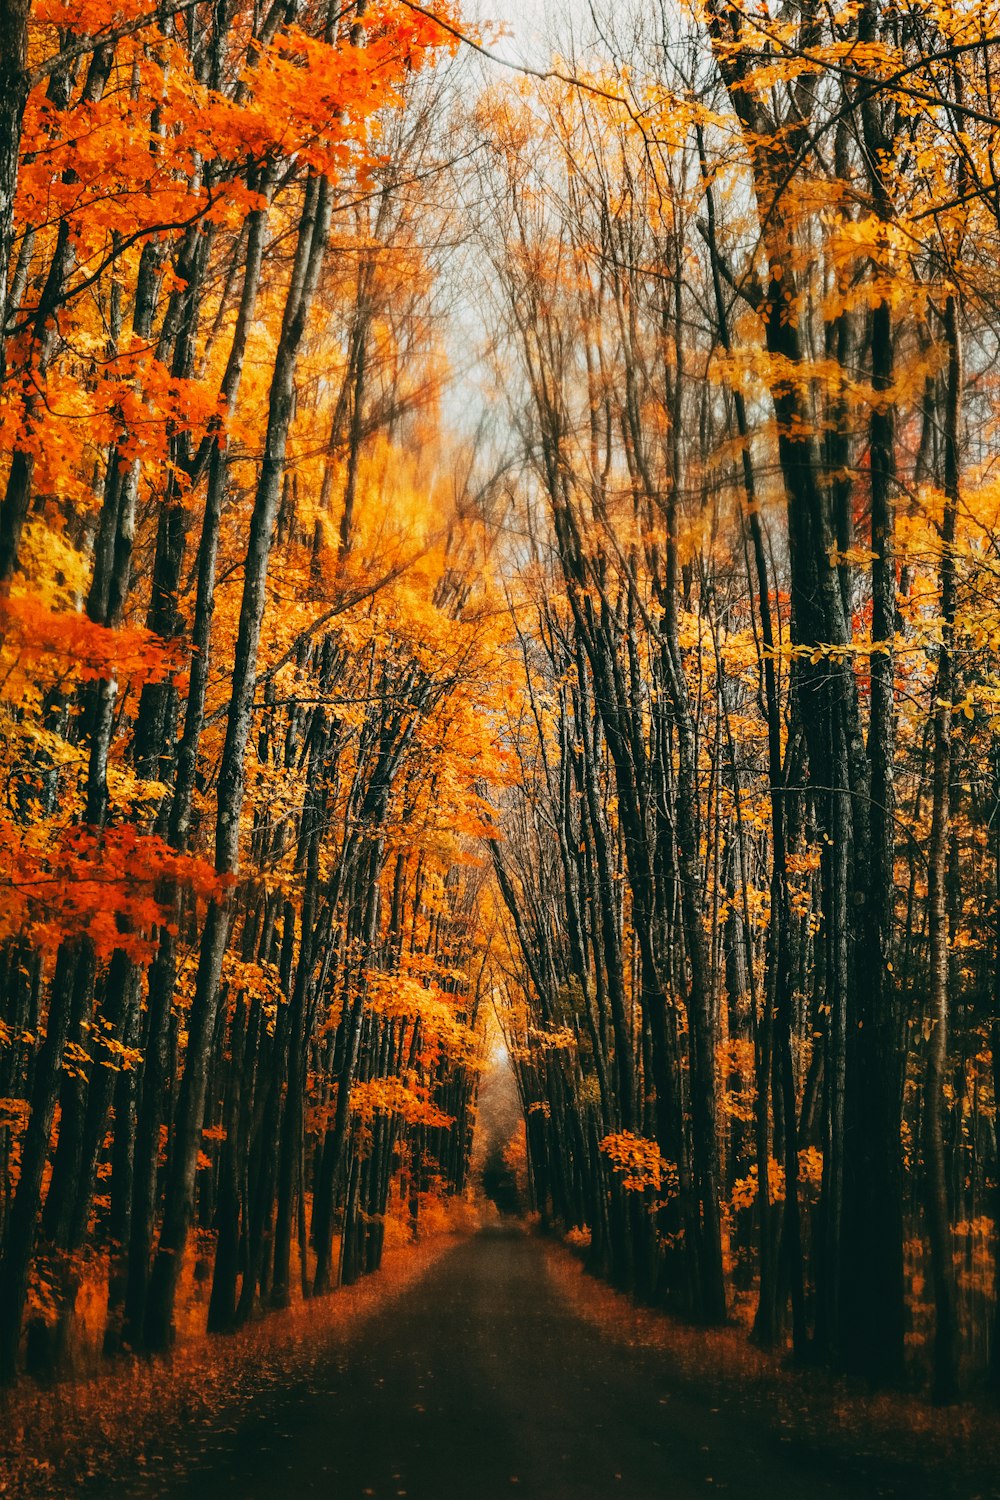 Une route entourée d’arbres aux feuilles orangers